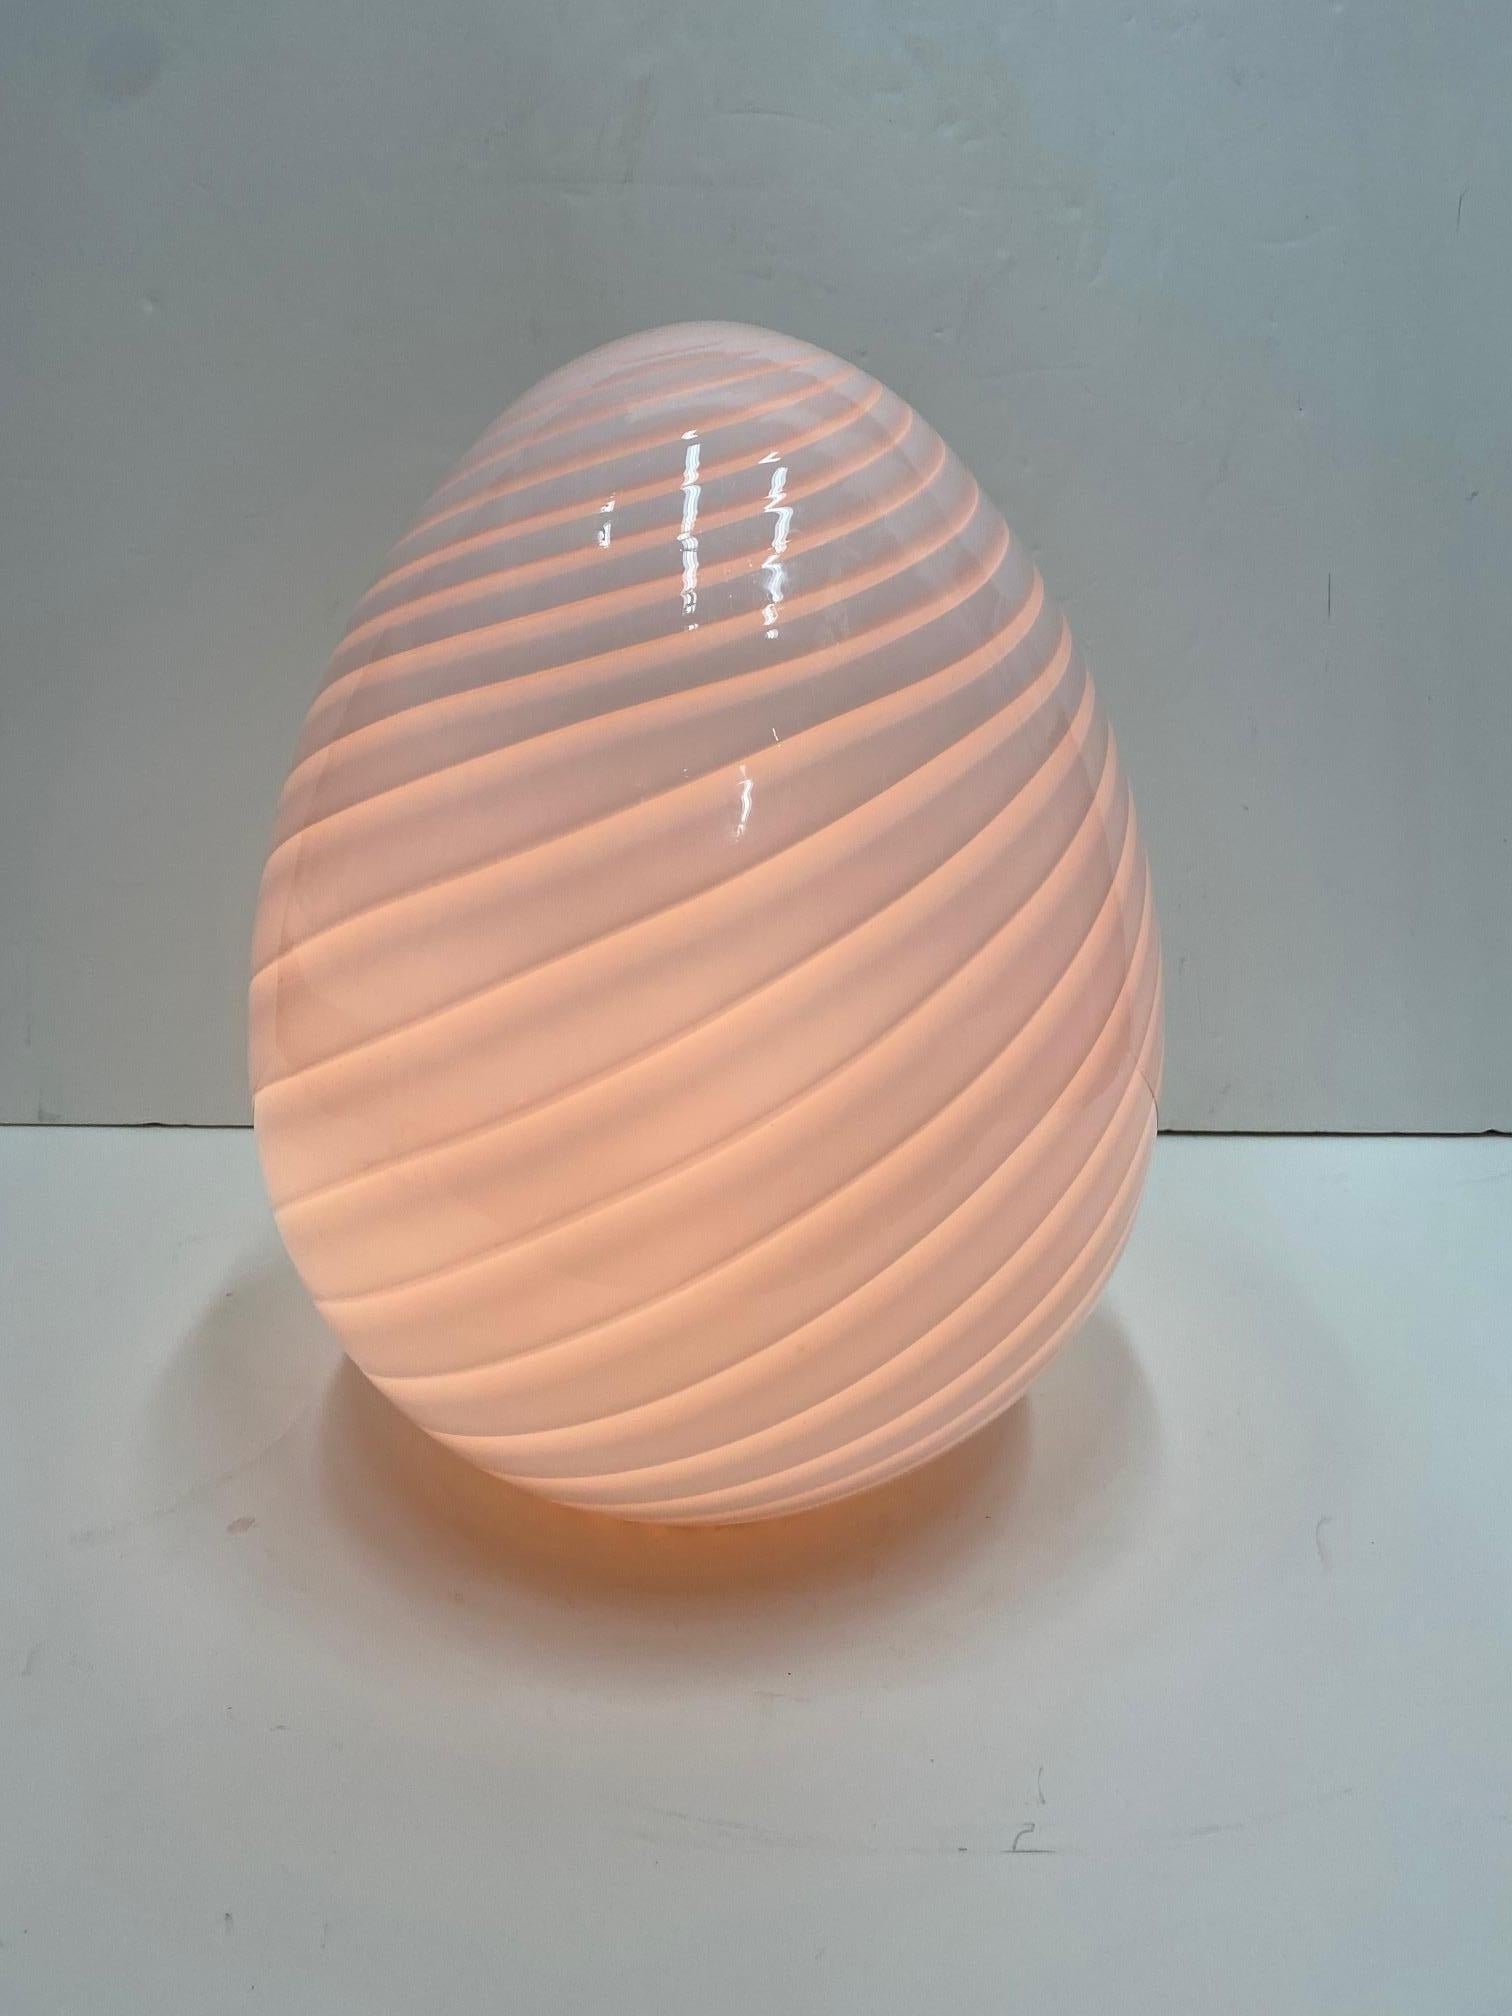 Italian Sensual Large Venini Murano Egg Table Lamp Fixture